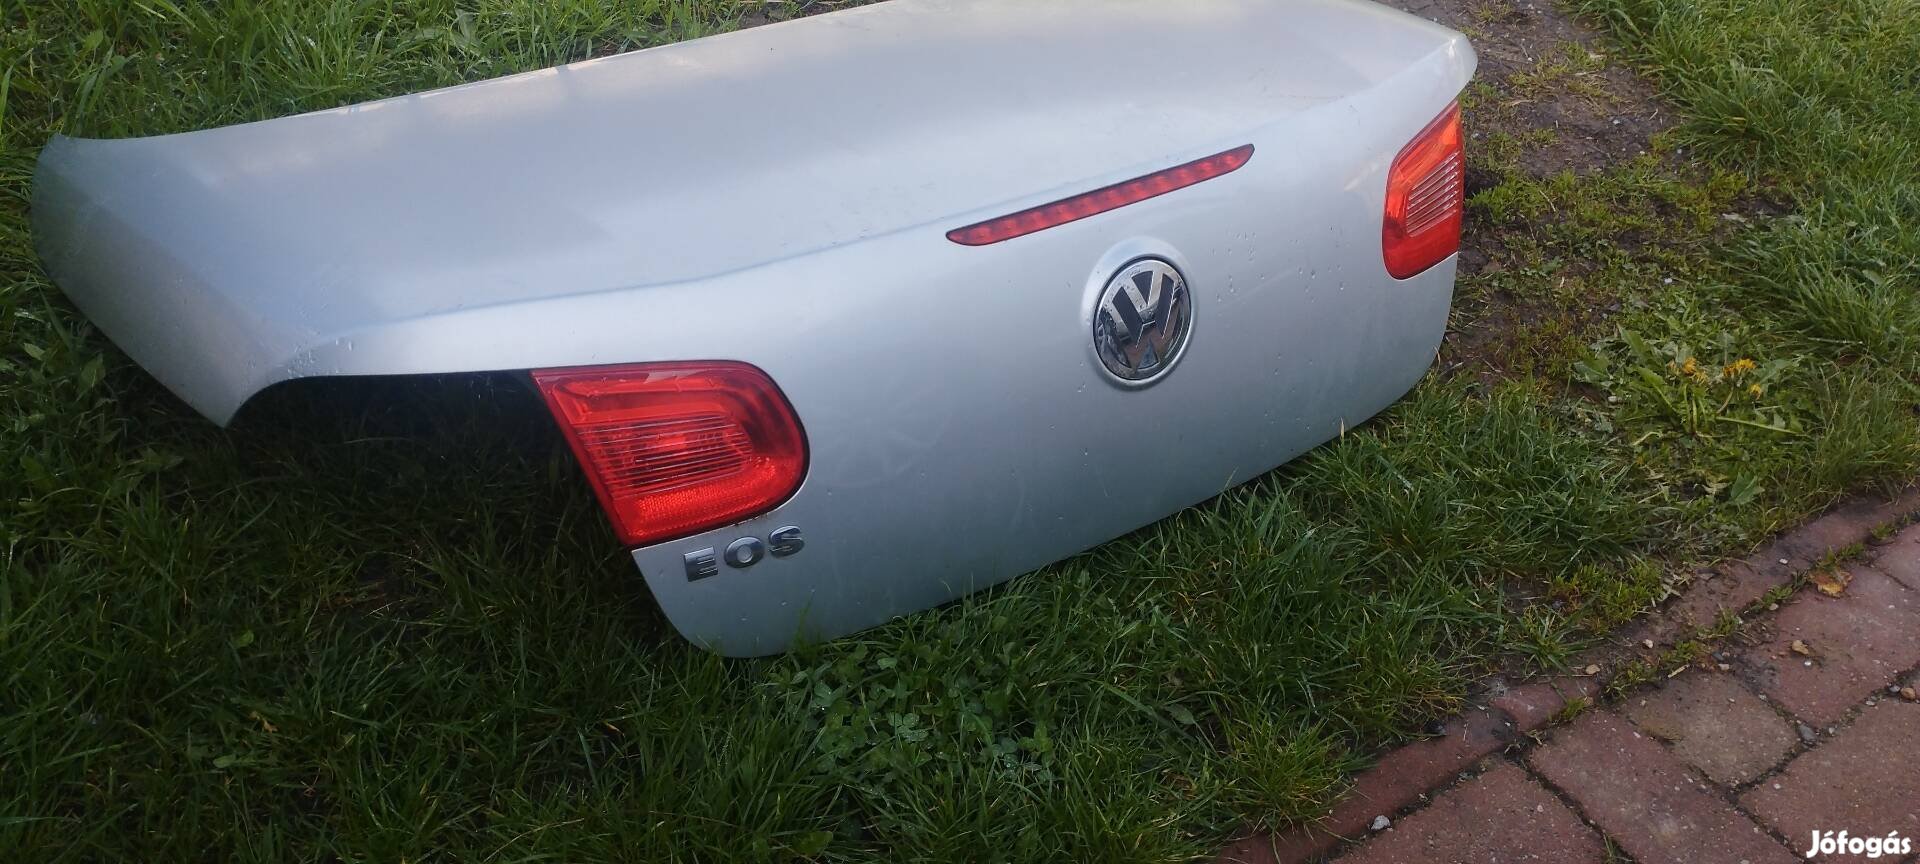 VW eos csomagter ajtó hibátlan állapotú 